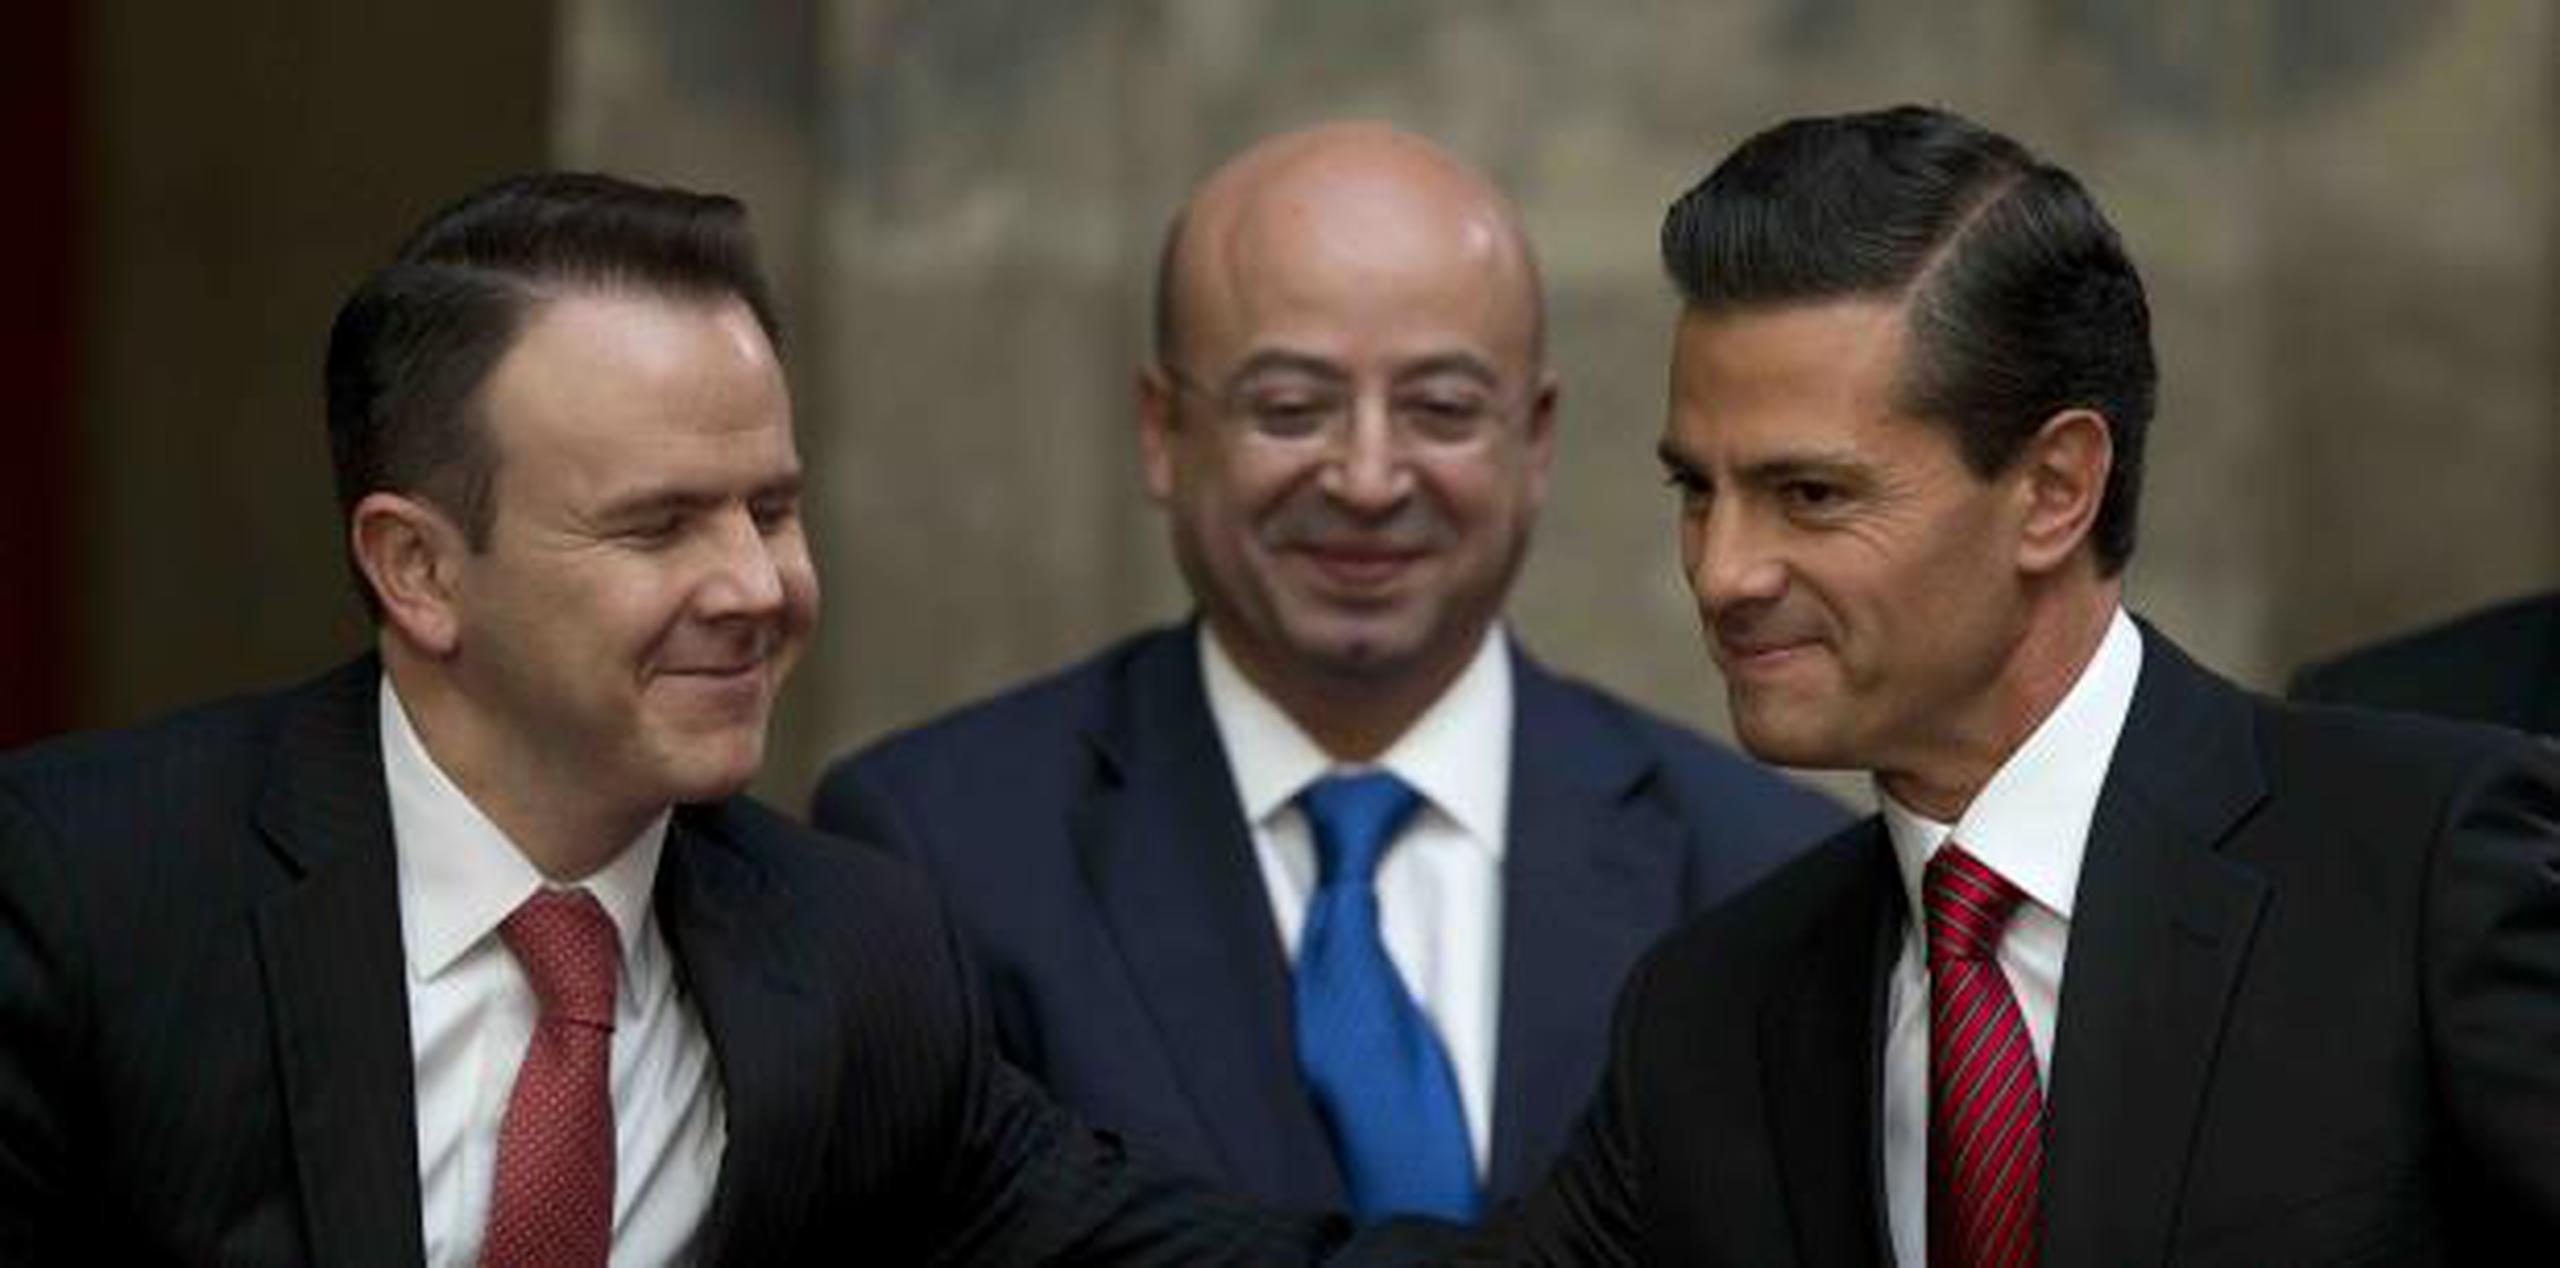 Uno de los ex colaboradores de Guzmán dijo que escuchó a éste alardear de que le pagó $100 millones al entonces presidente Enrique Peña Nieto, a la derecha. (AP)